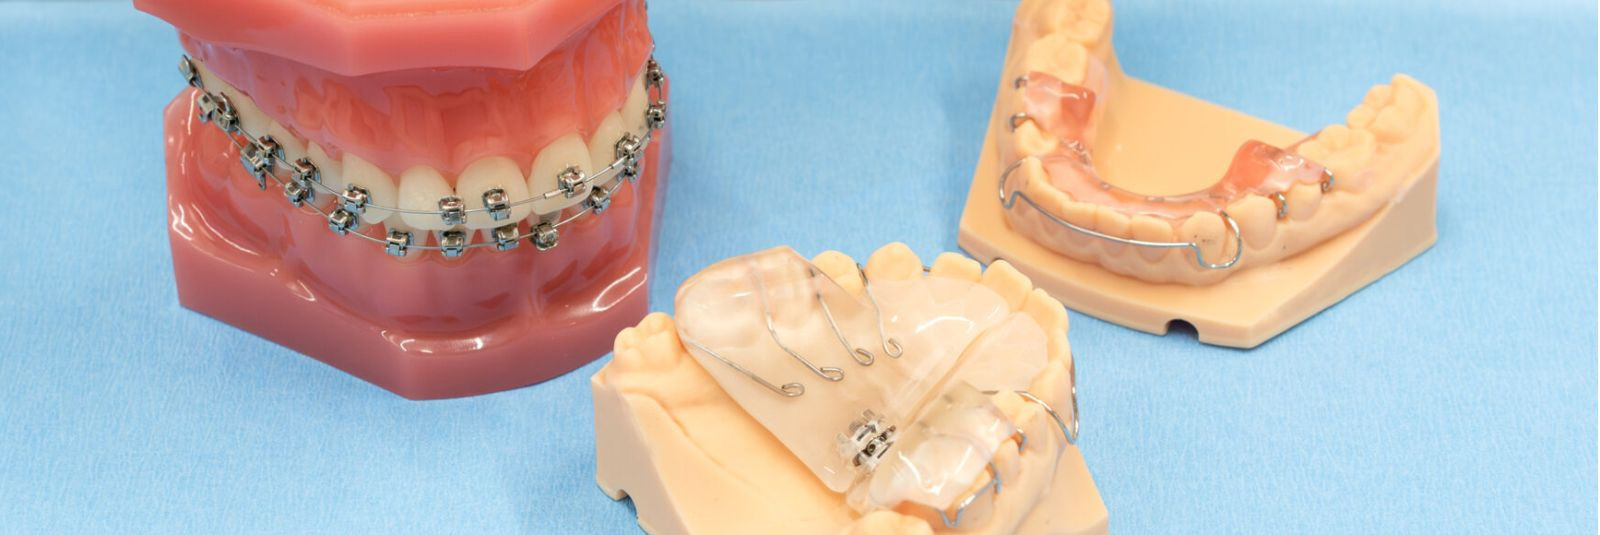 Kaped ja breketid on hindamatud abivahendid hammaste reastamiseks ning valehambumuse korrigeerimiseks. Ent nende pikaajaline kasutamine nõuab hoolikat kodust ho